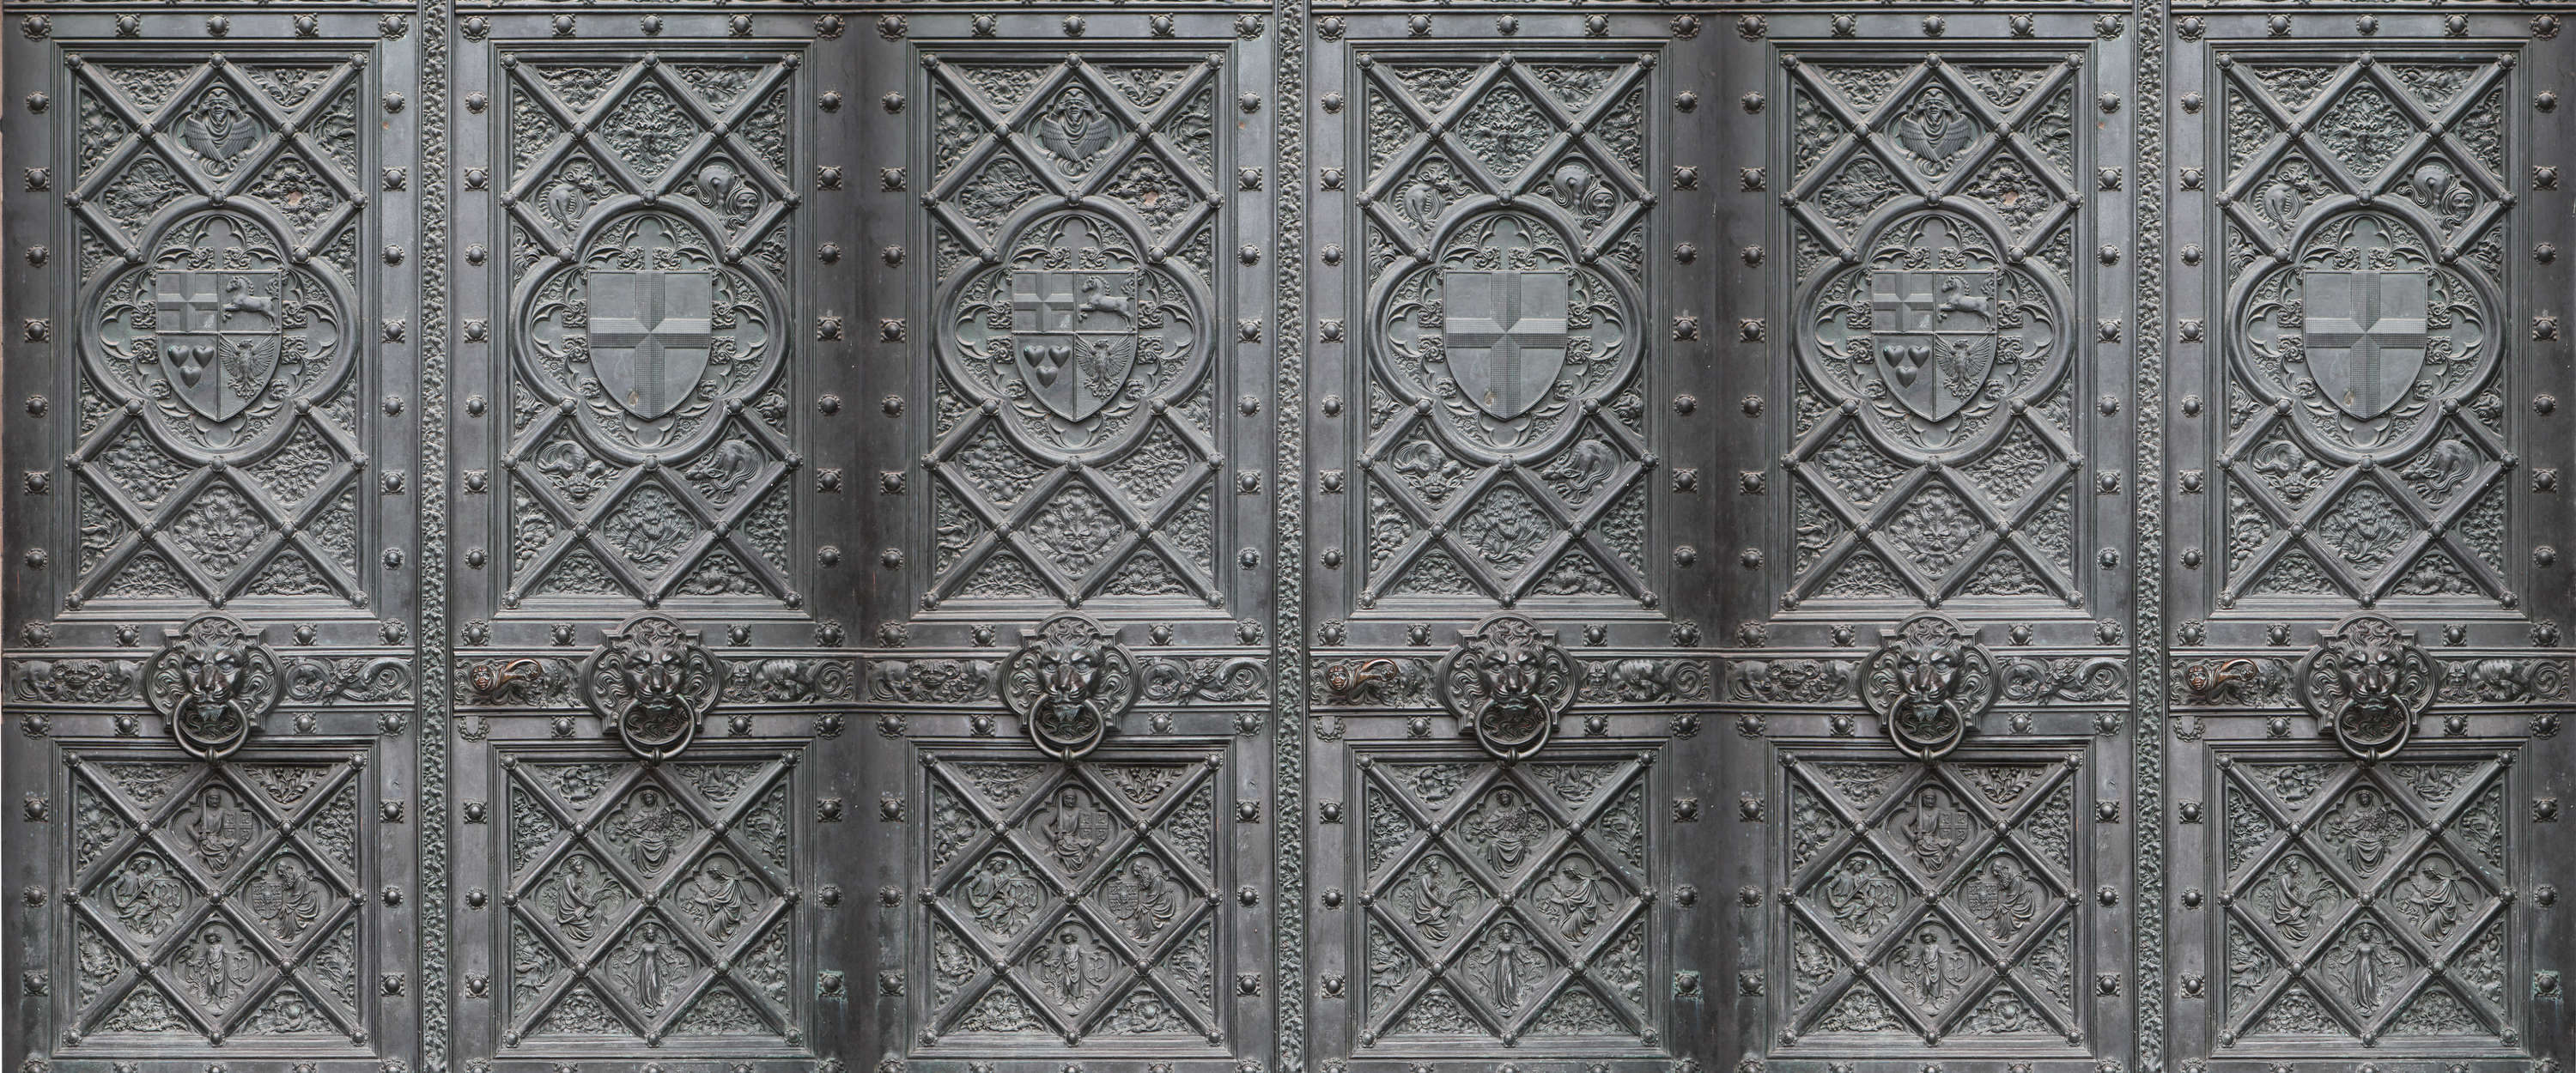             Papel pintado para puertas de metal en estilo antiguo con un patrón detallado
        